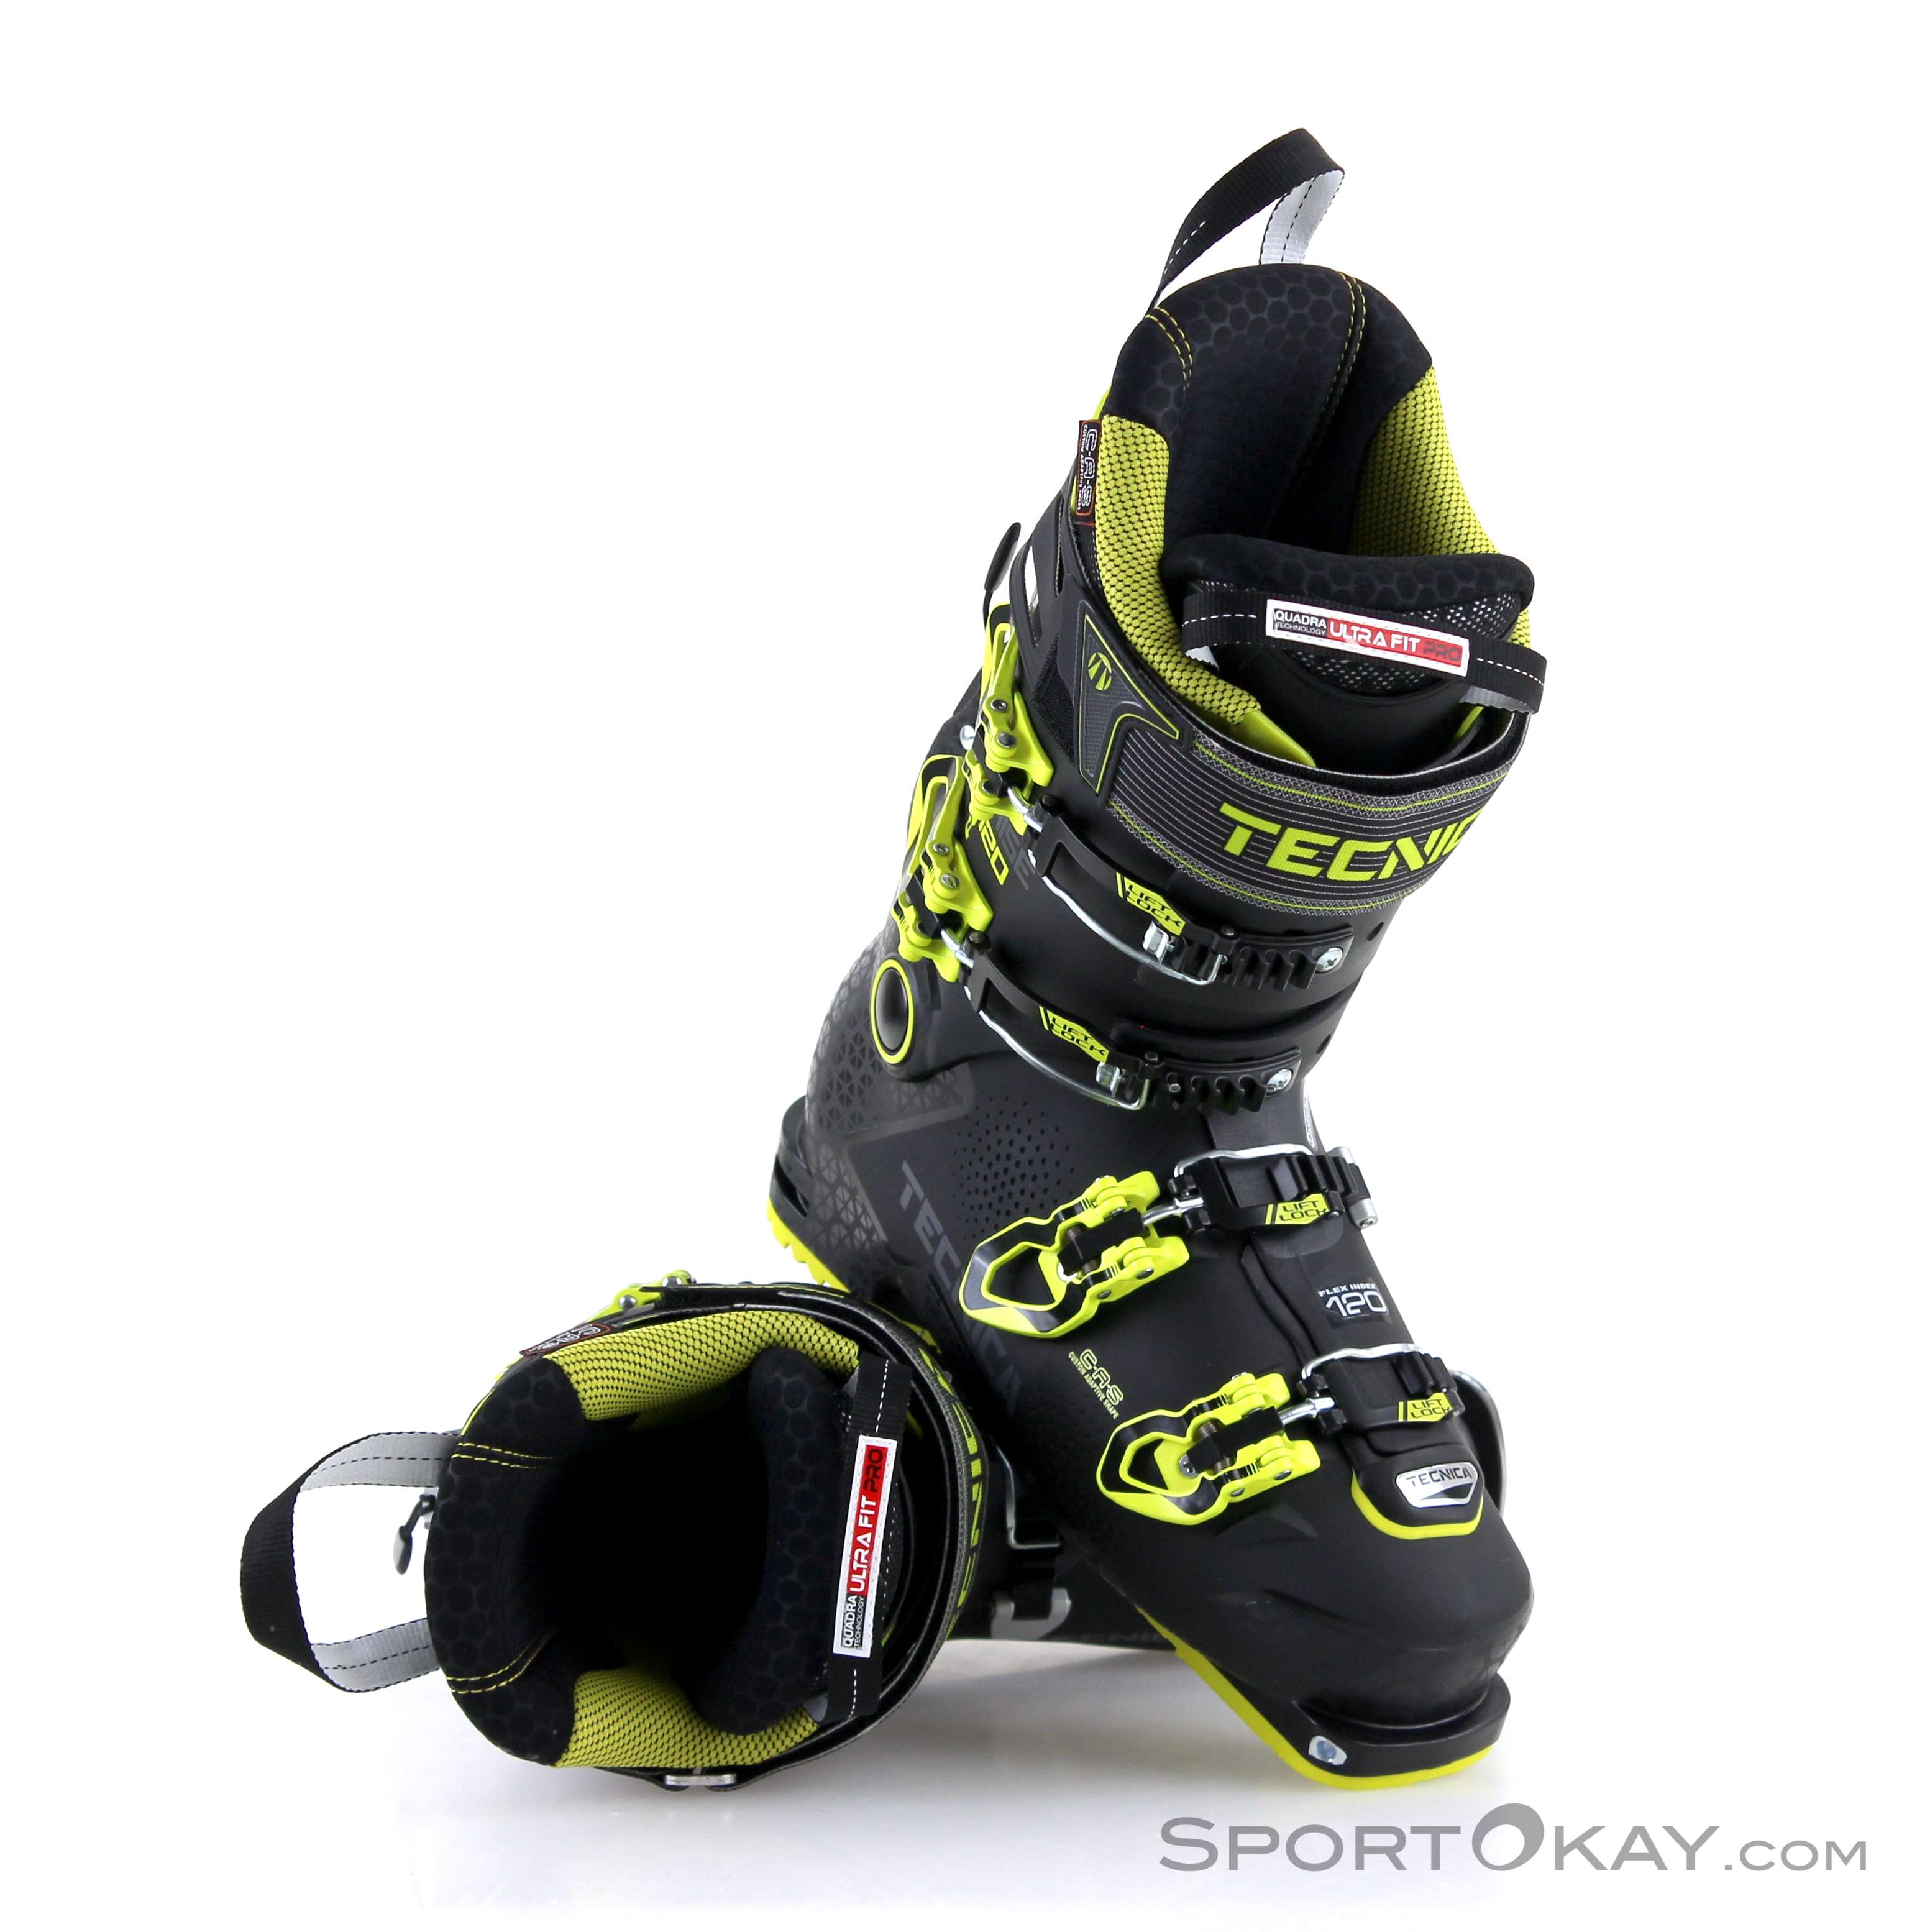 cochise ski boots